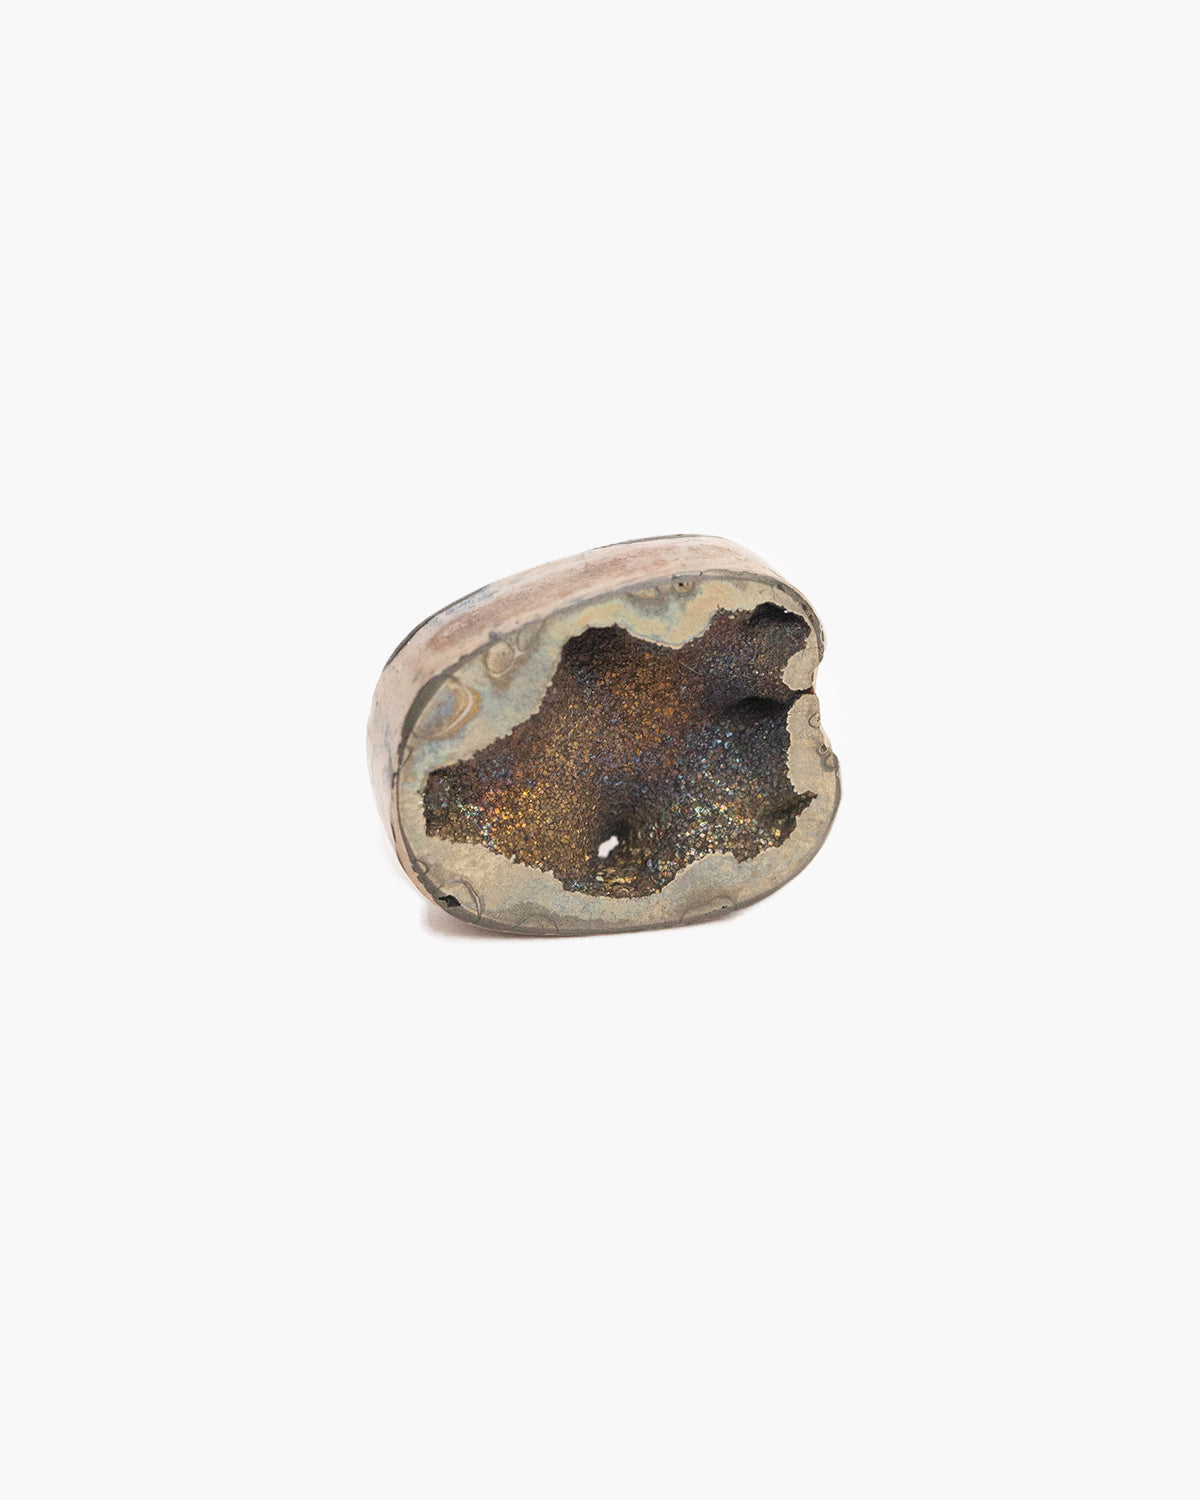 Pyritised Ammonite – N°01